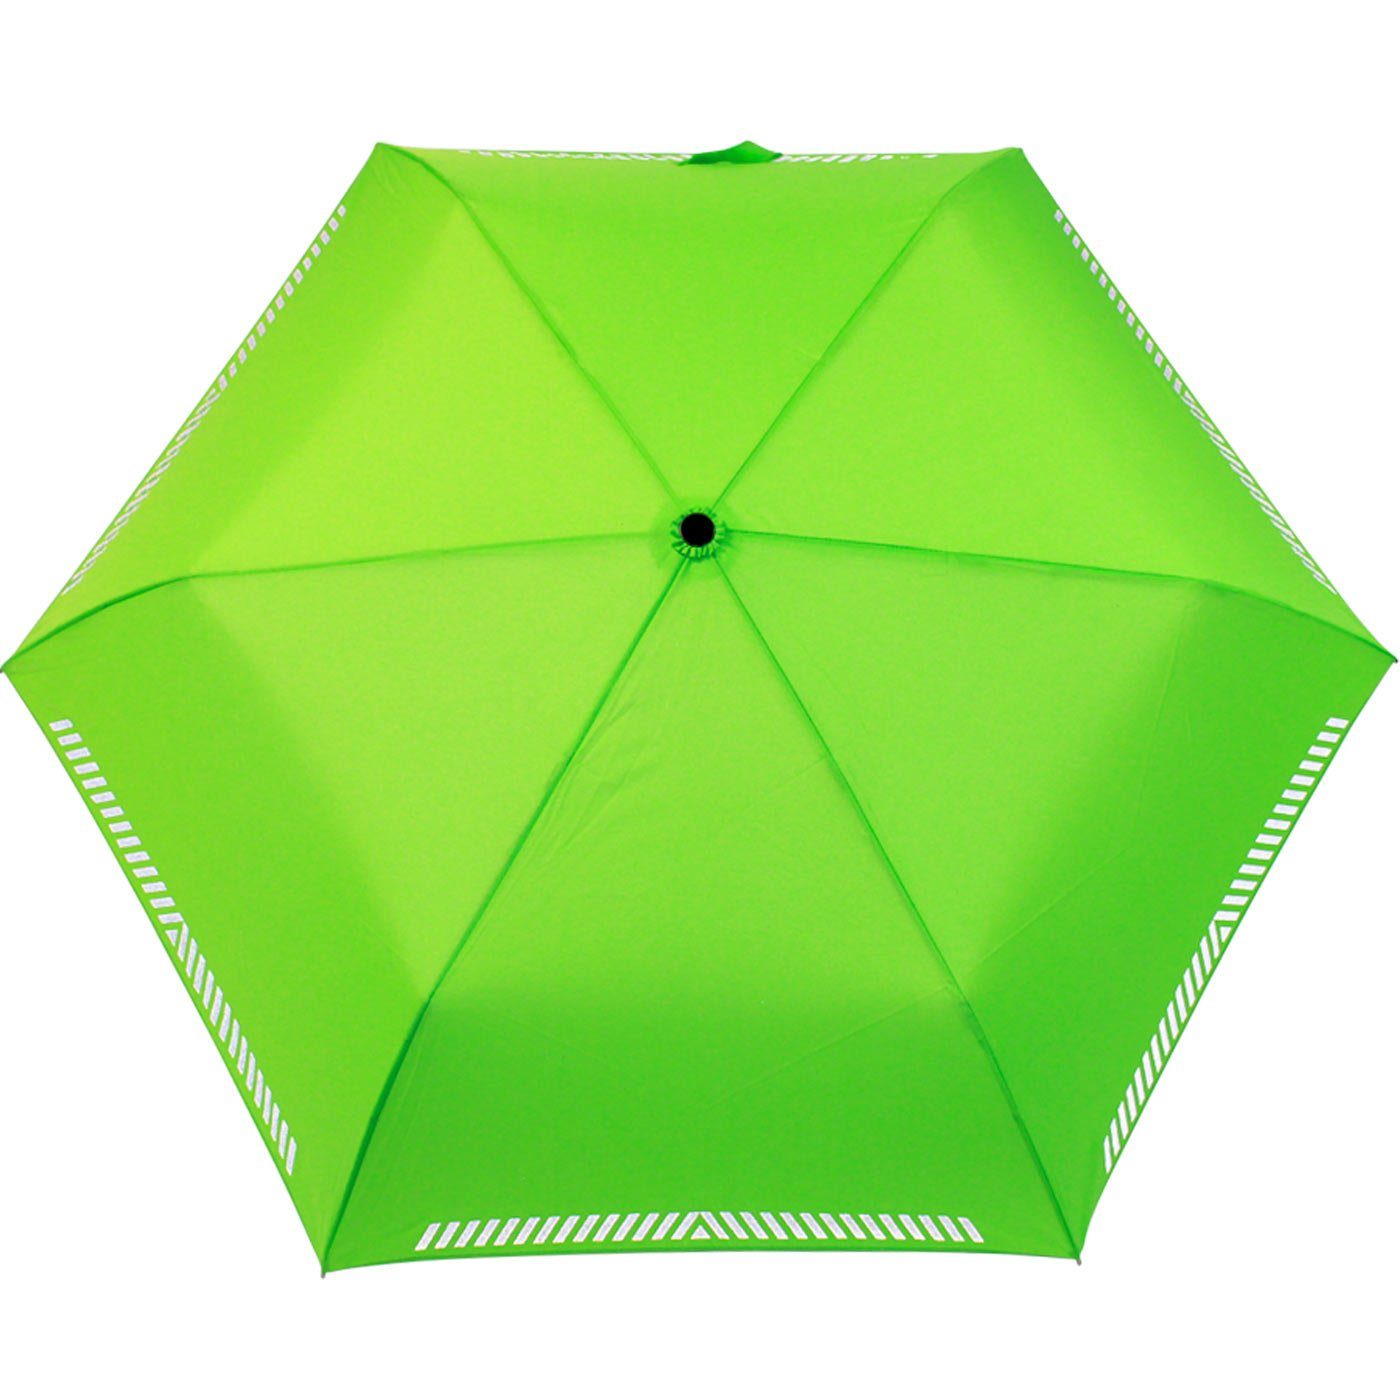 iX-brella Taschenregenschirm Mini Kinderschirm Safety extra reflektierend Reflex leicht, neon-grün